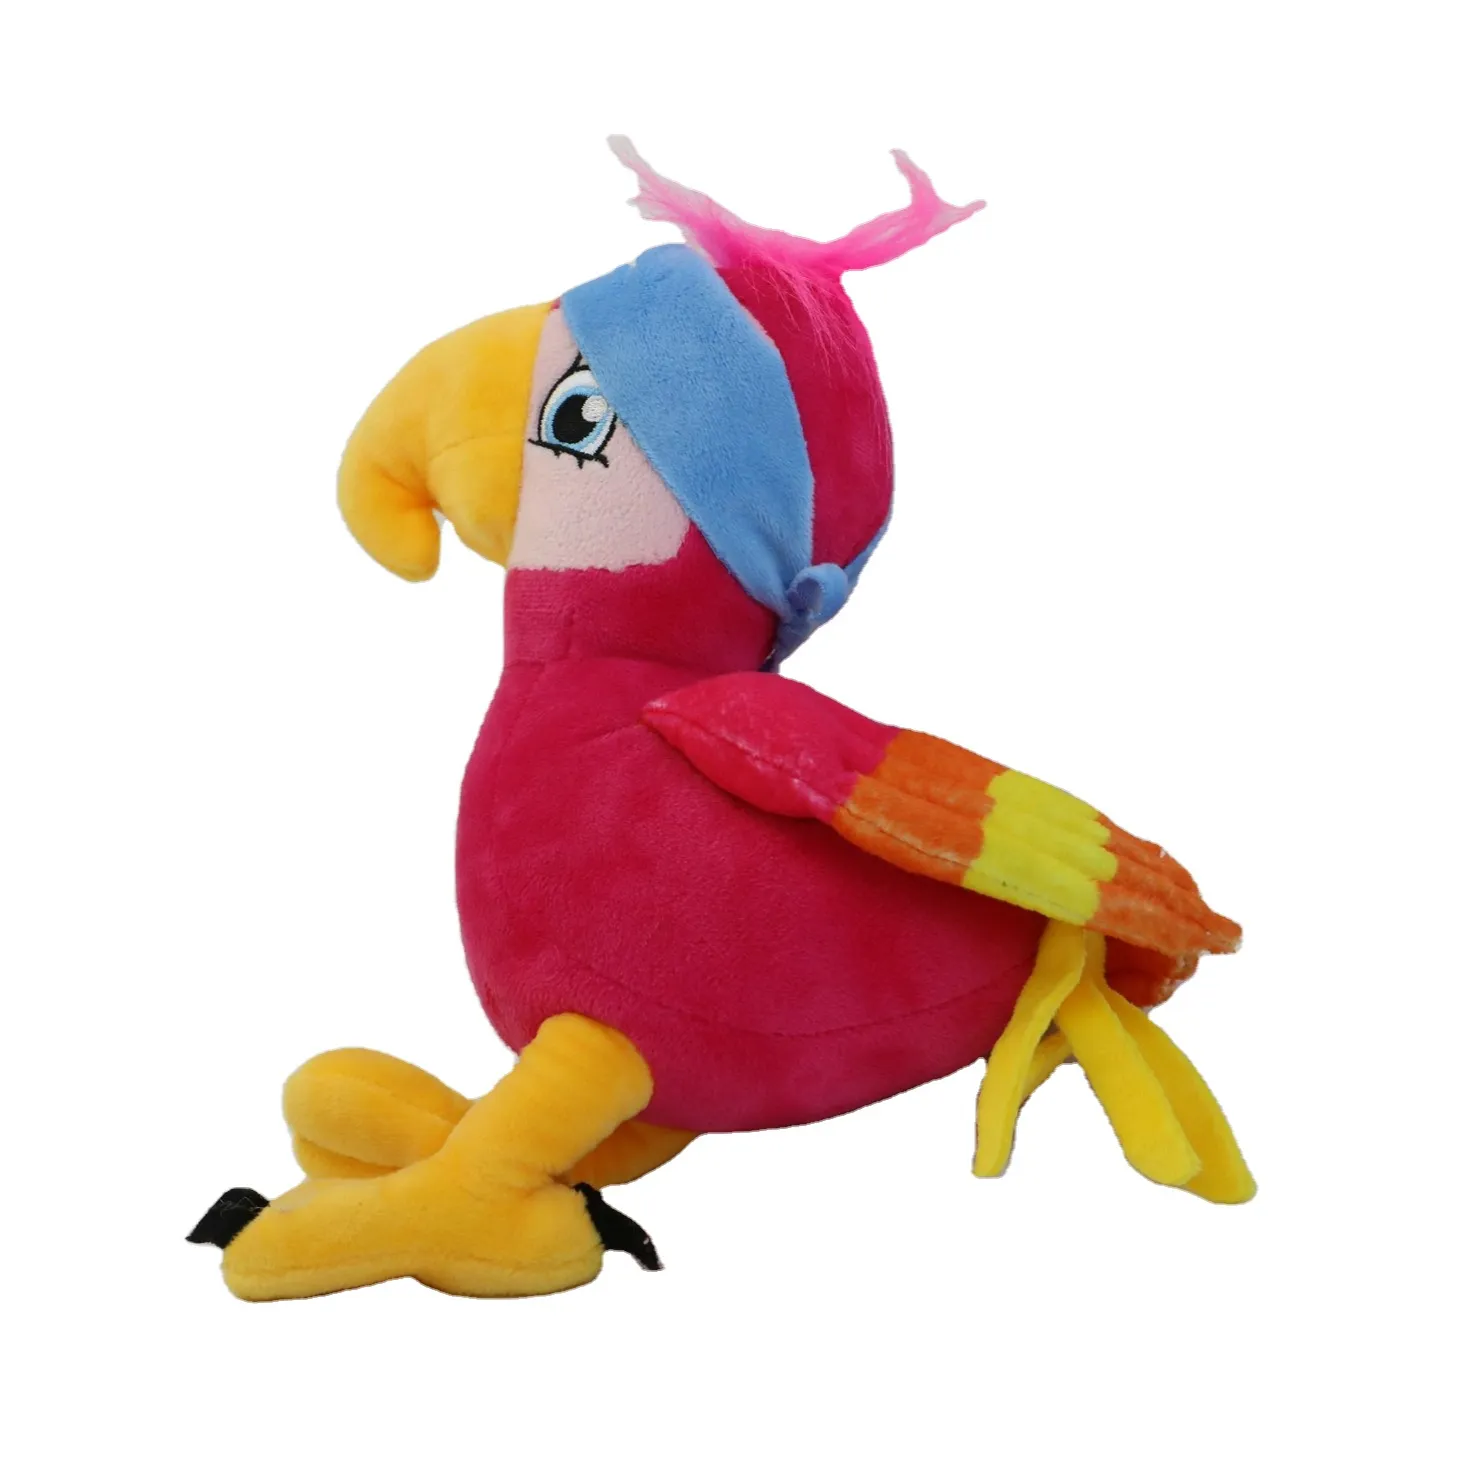 China Factory Plush Toy Animal Customization Stuffed Plush Mascot